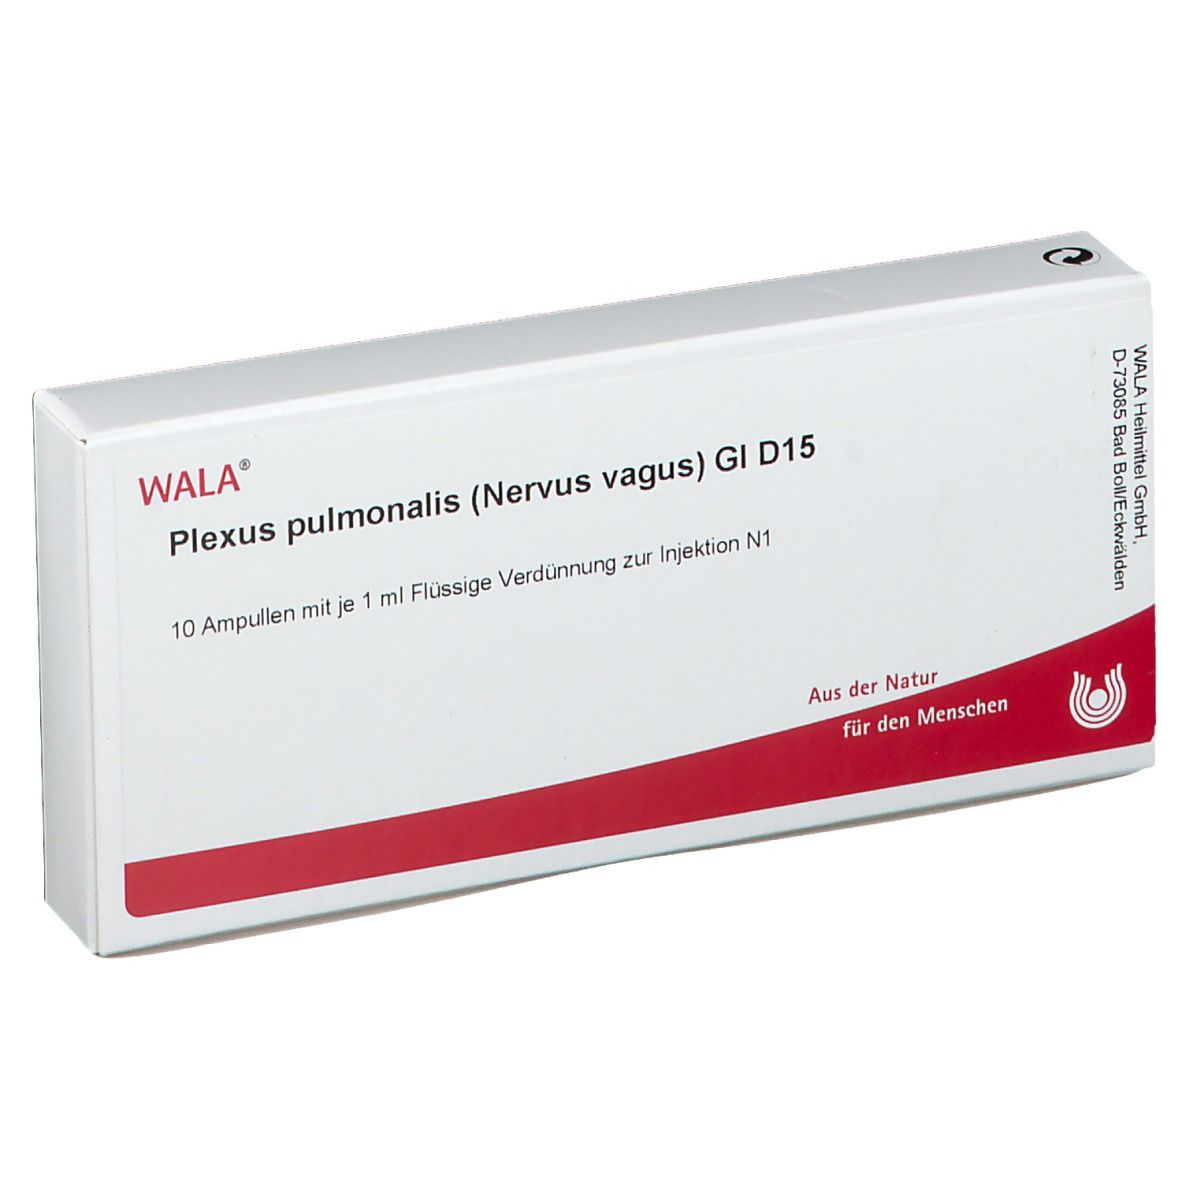 Wala® Plexus pulmonalis Nervus vagus Gl D 15